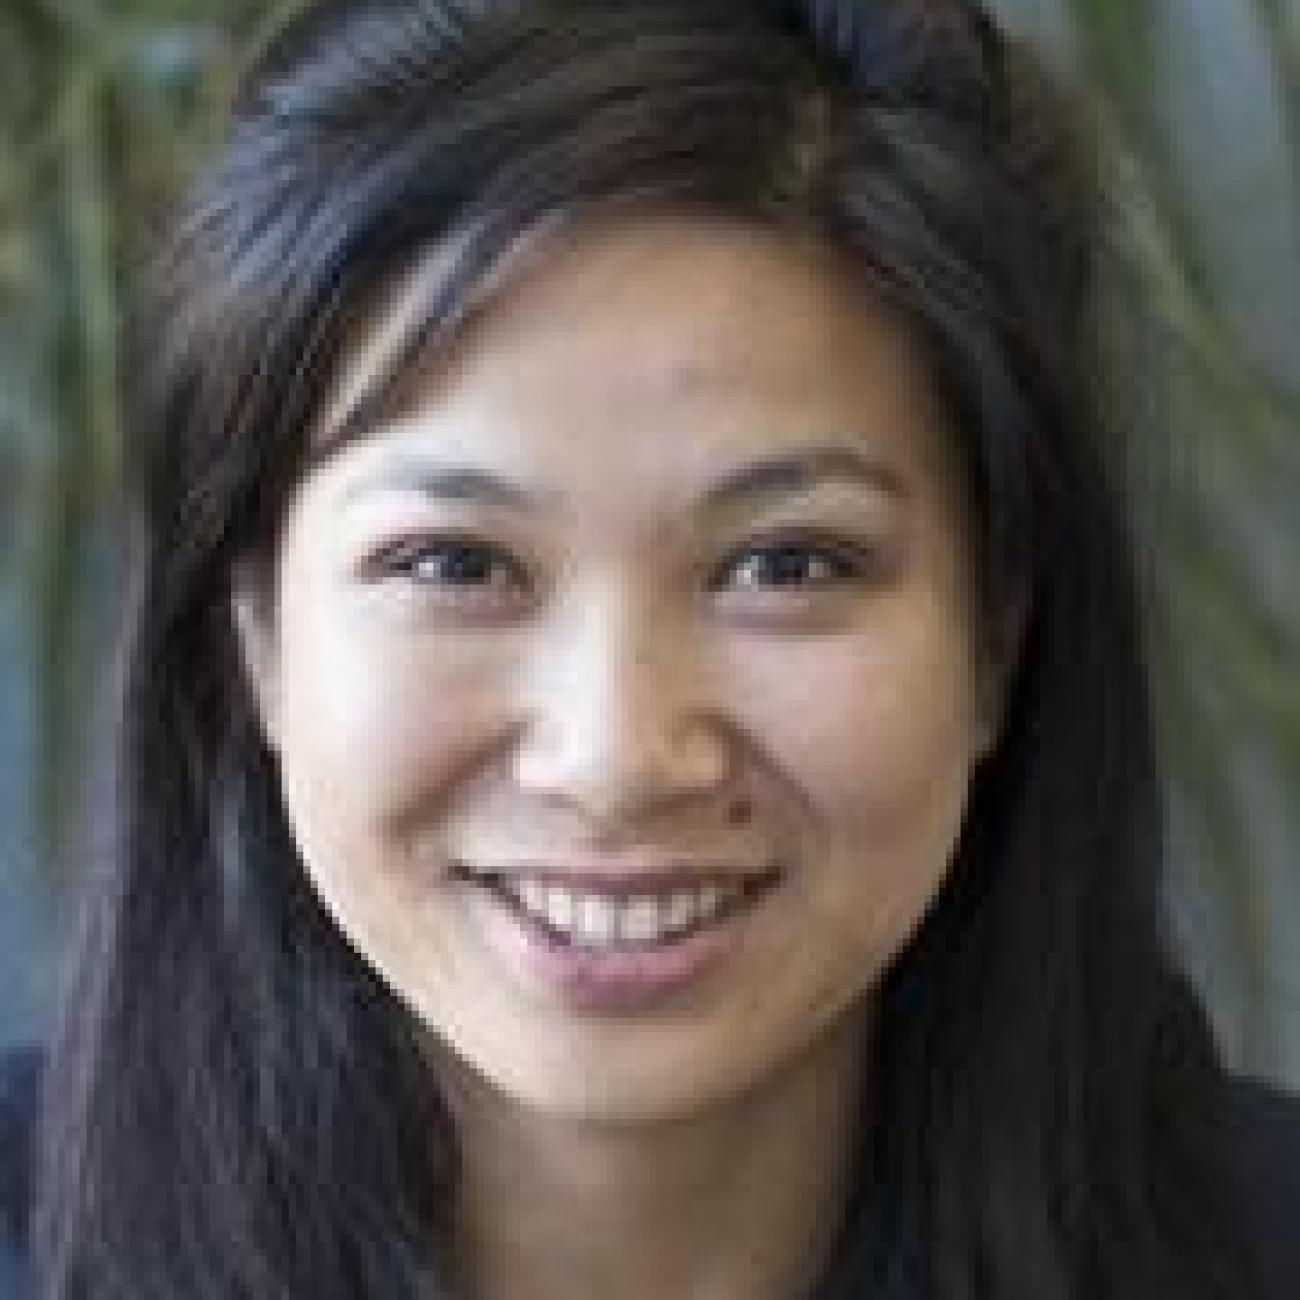 Doctor Bernice Kuang